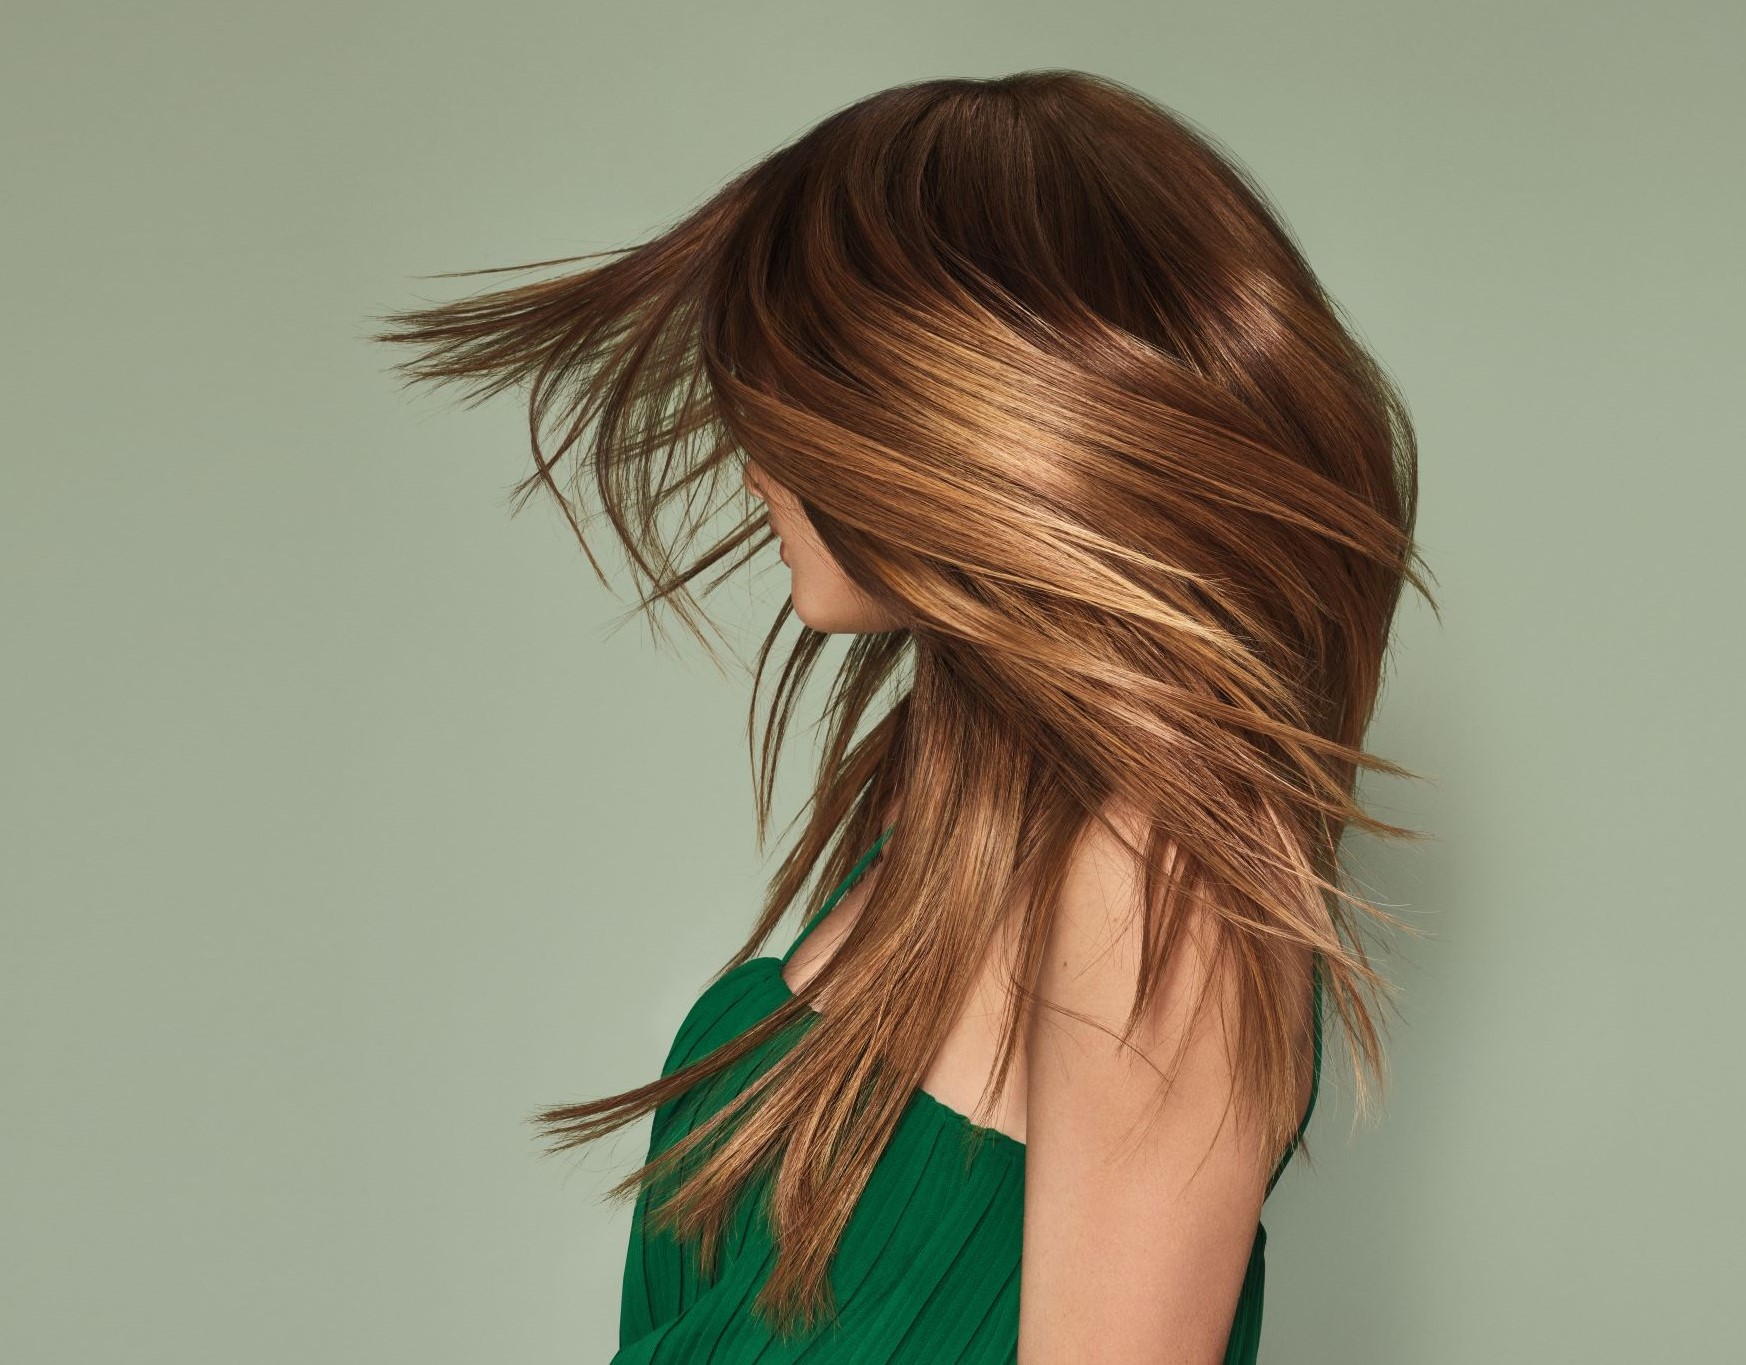 Aveda Hair Color: Βαφές μαλλιών φυσικής προέλευσης και vegan, για χρώμα χωρίς συμβιβασμούς